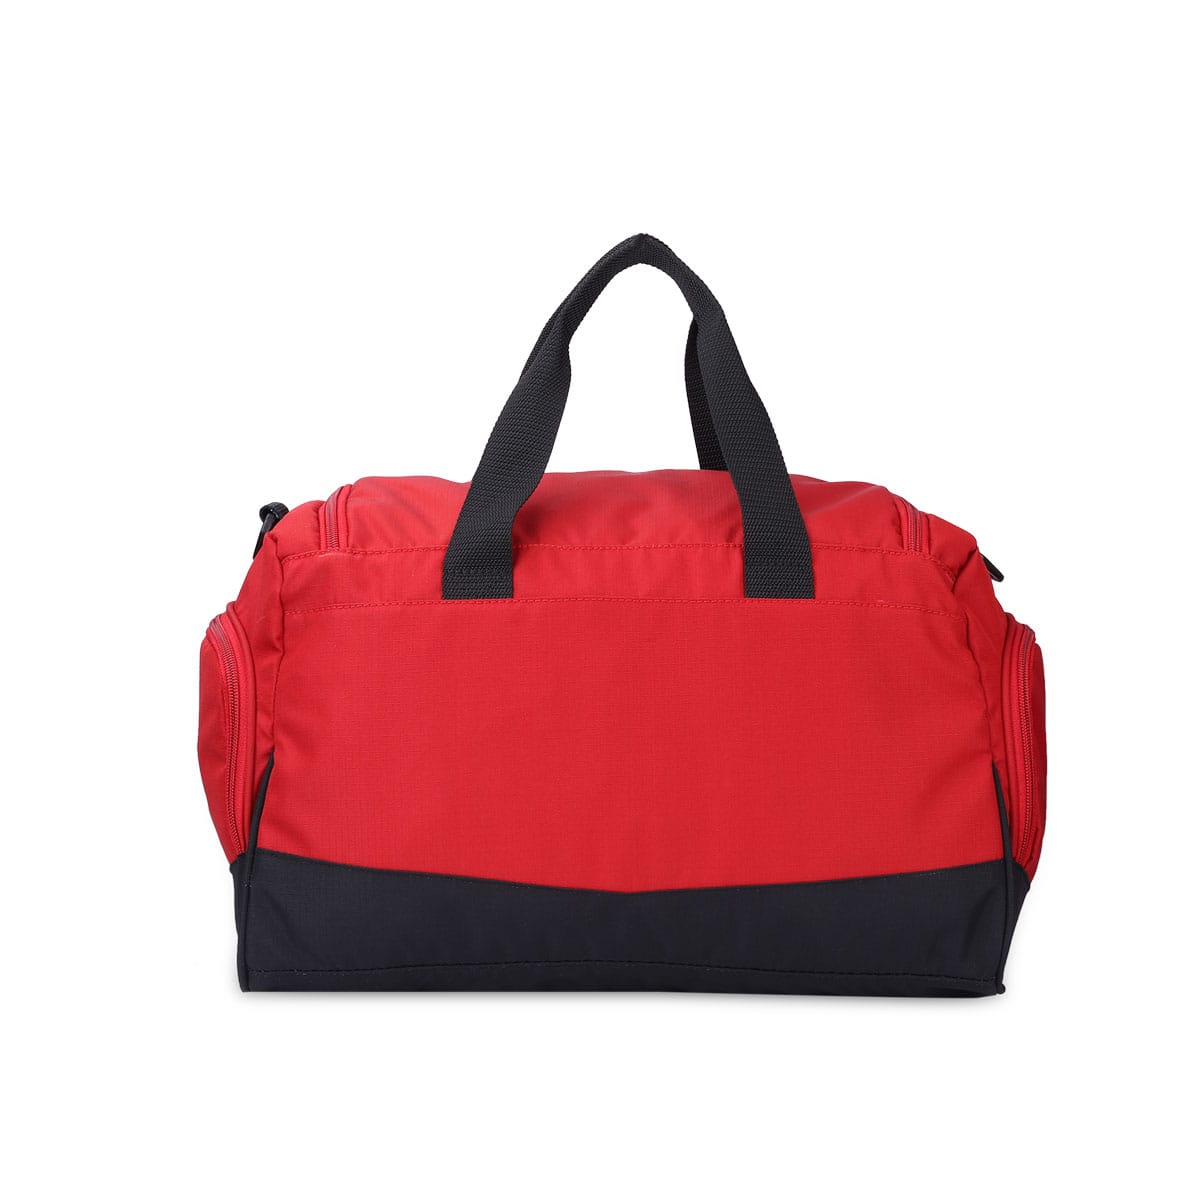 Black-Red | Protecta Rep Gym Bag-2